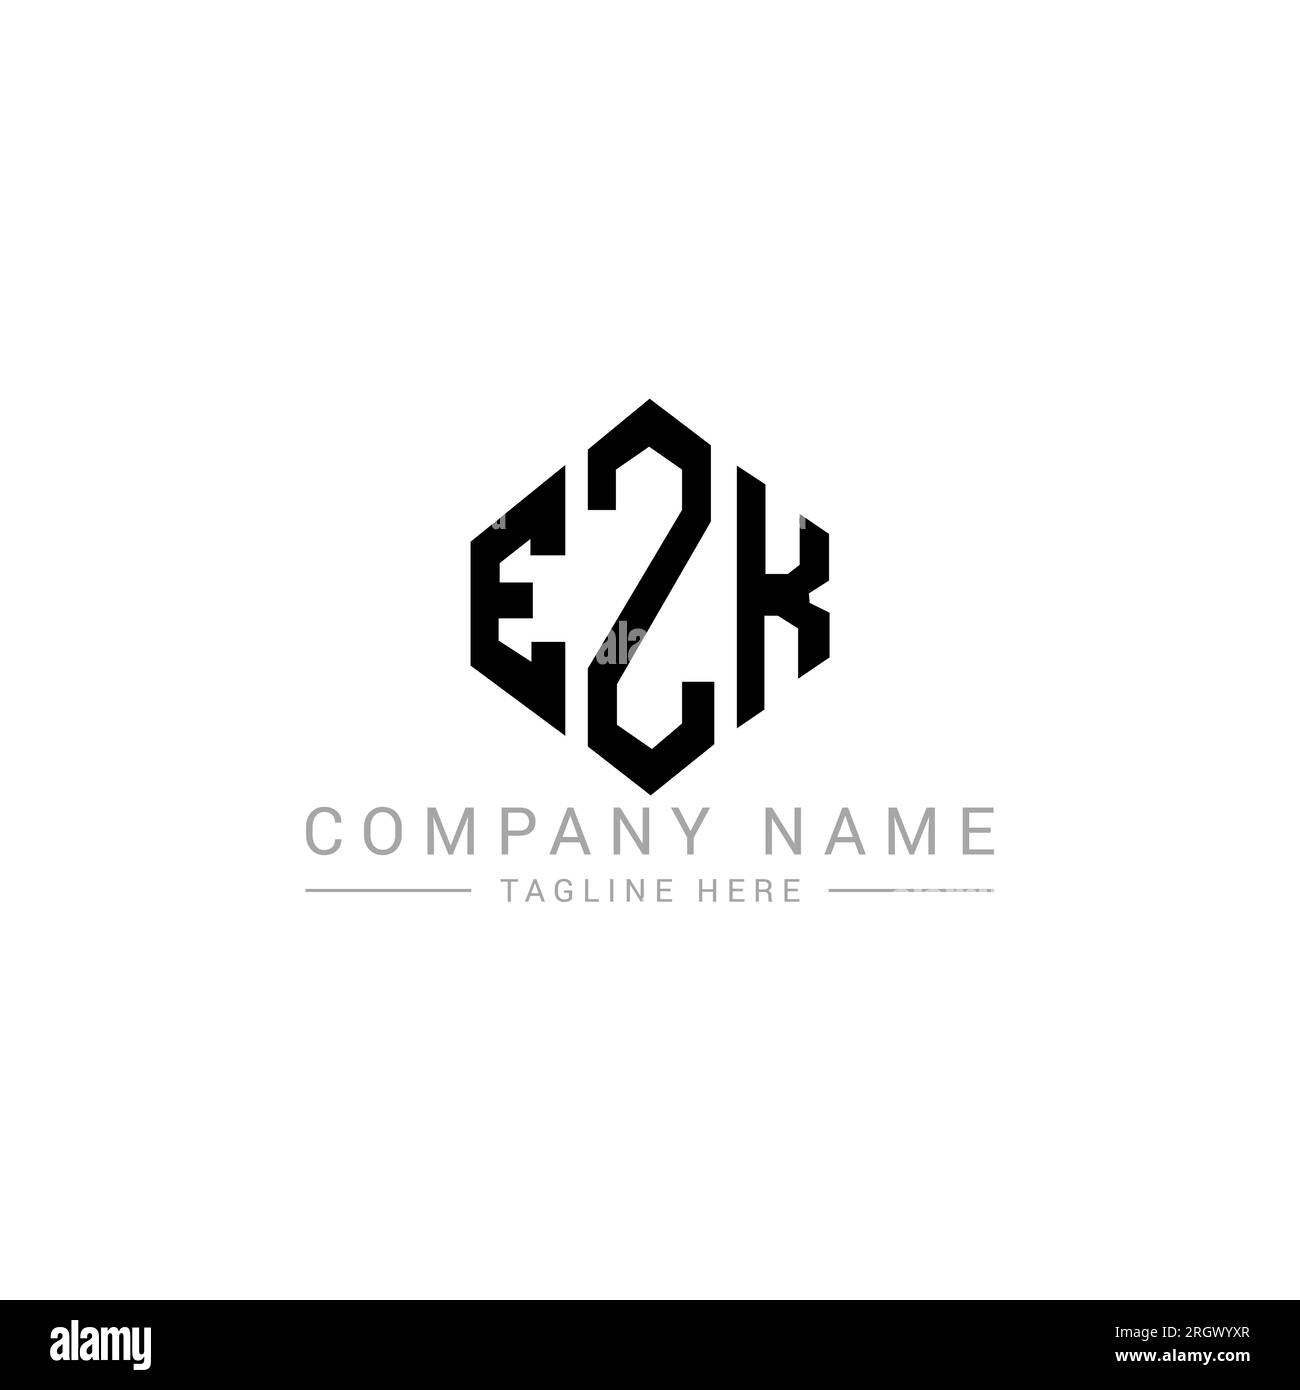 LOGO mit EZK-Buchstaben und Polygonform. EZK-Polygon- und würfelförmiges Logo. EZK sechseckige Vektor-Logo-Vorlage in Weiß und Schwarz. EZK monogr Stock Vektor